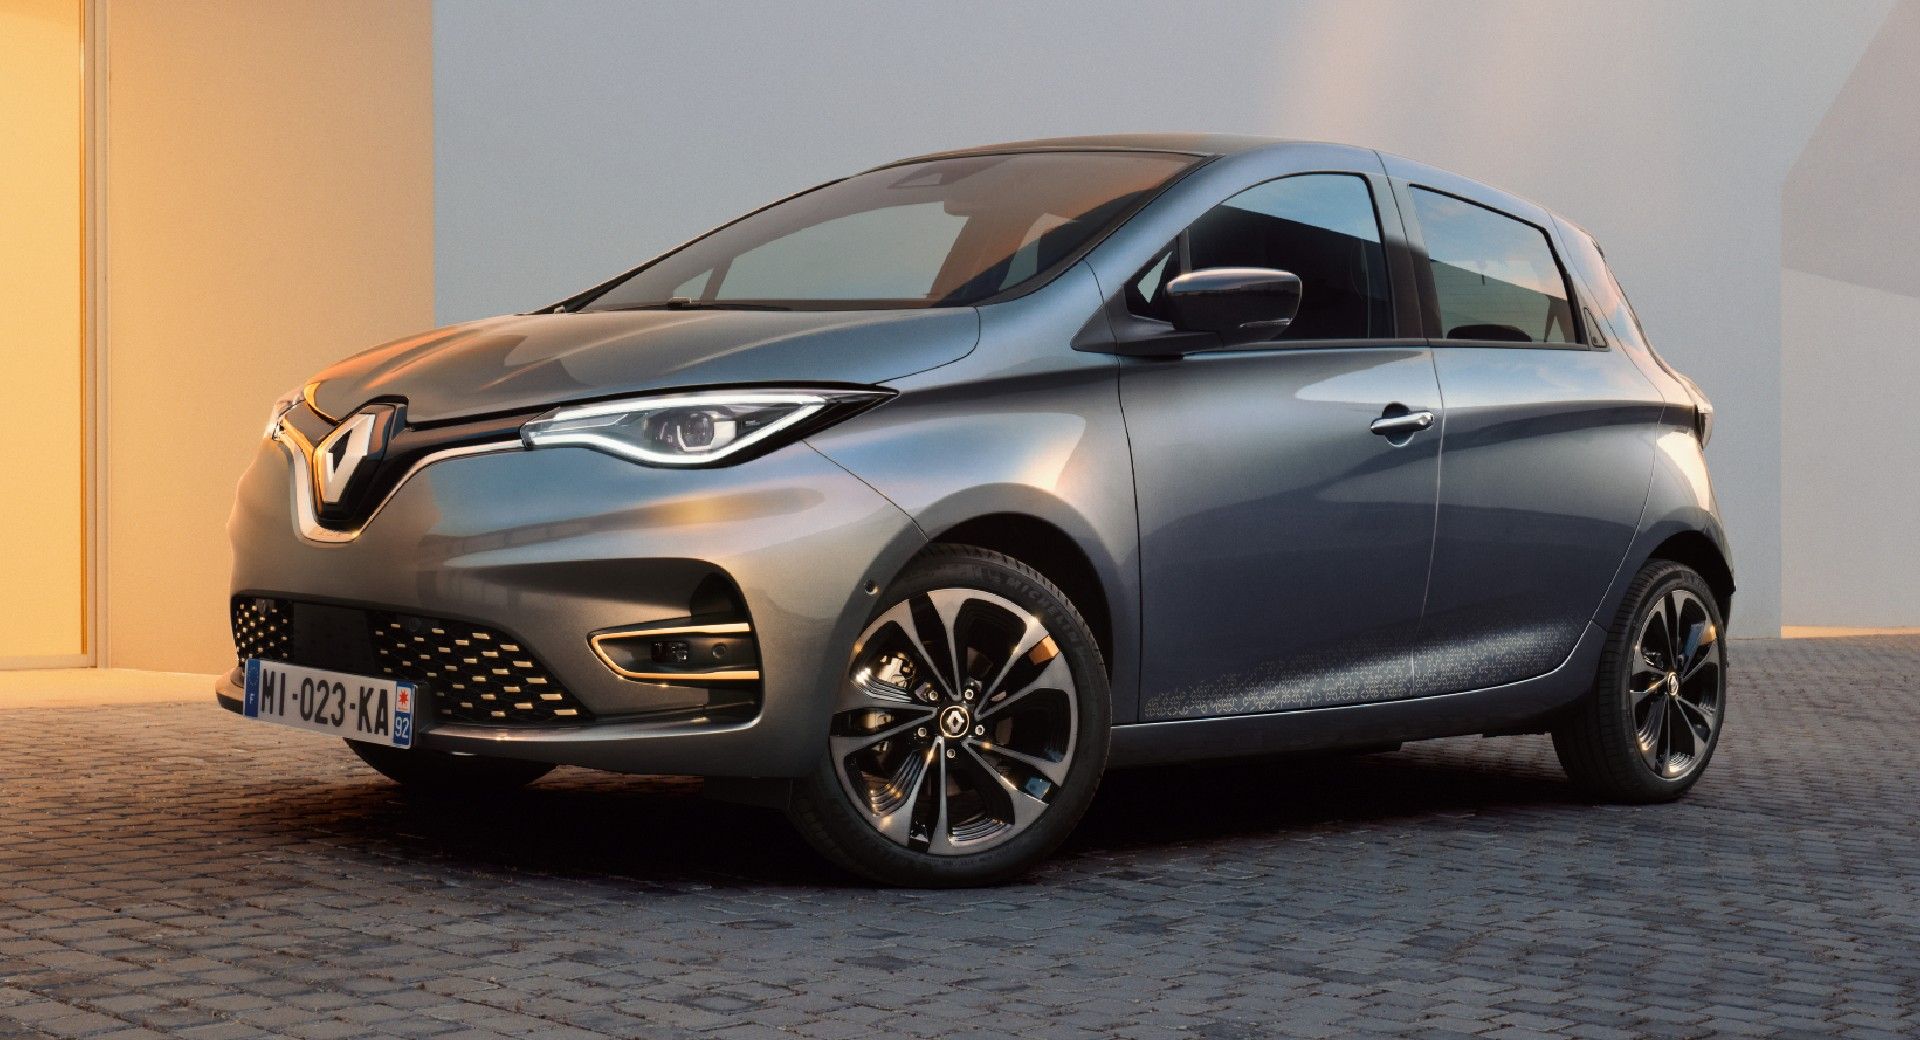 Renault Zoe EV Gets Mild Updates For 2022